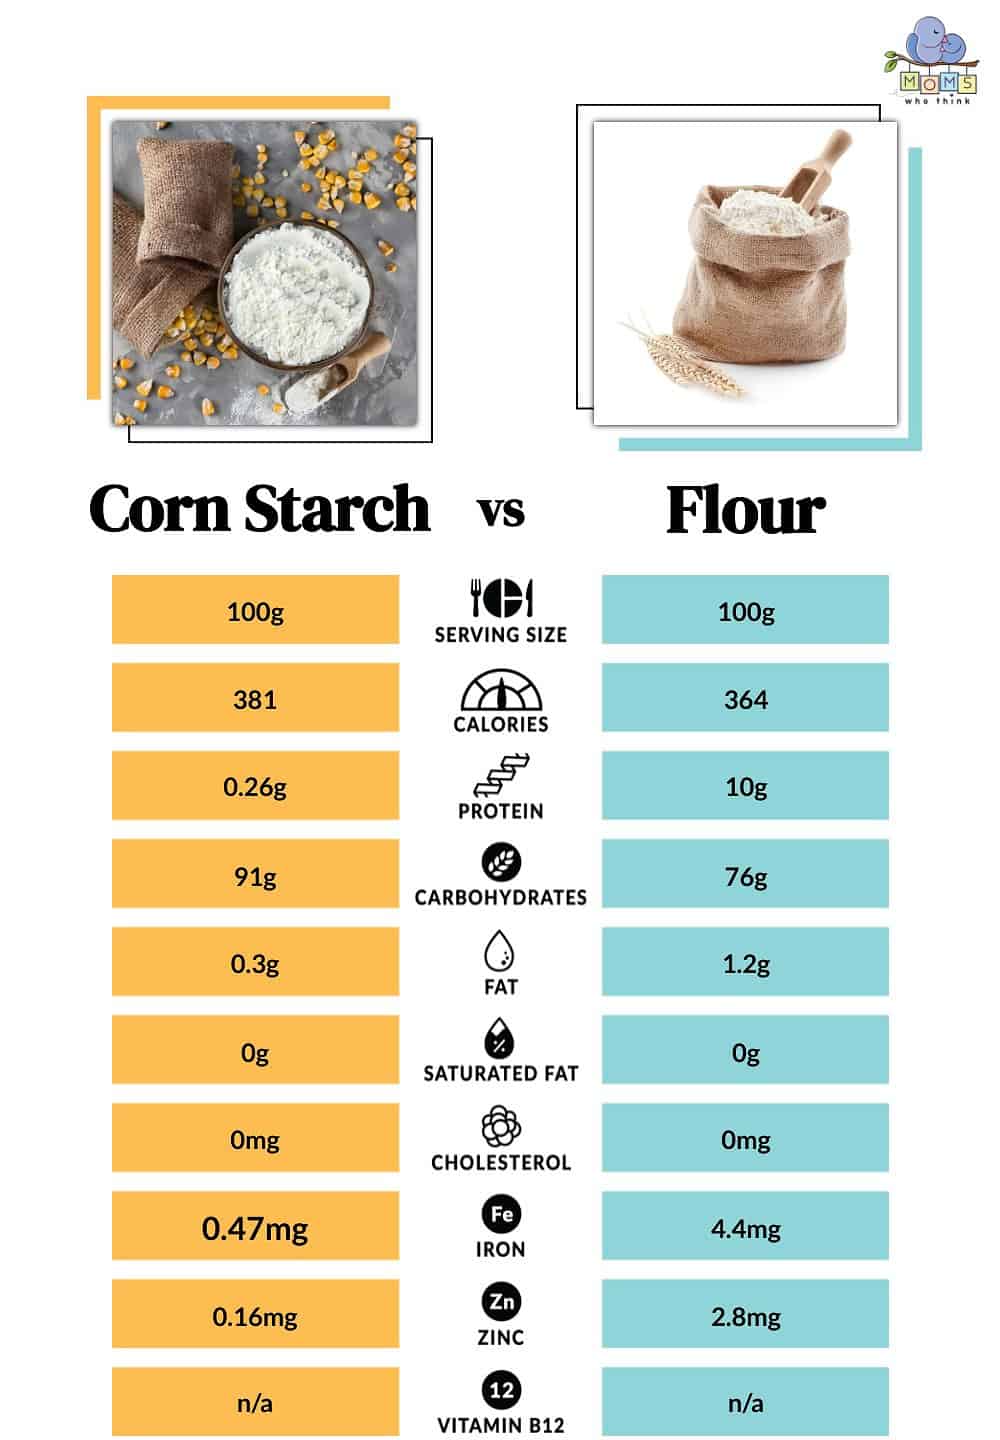 Corn Starch vs Flour Nutritional Facts